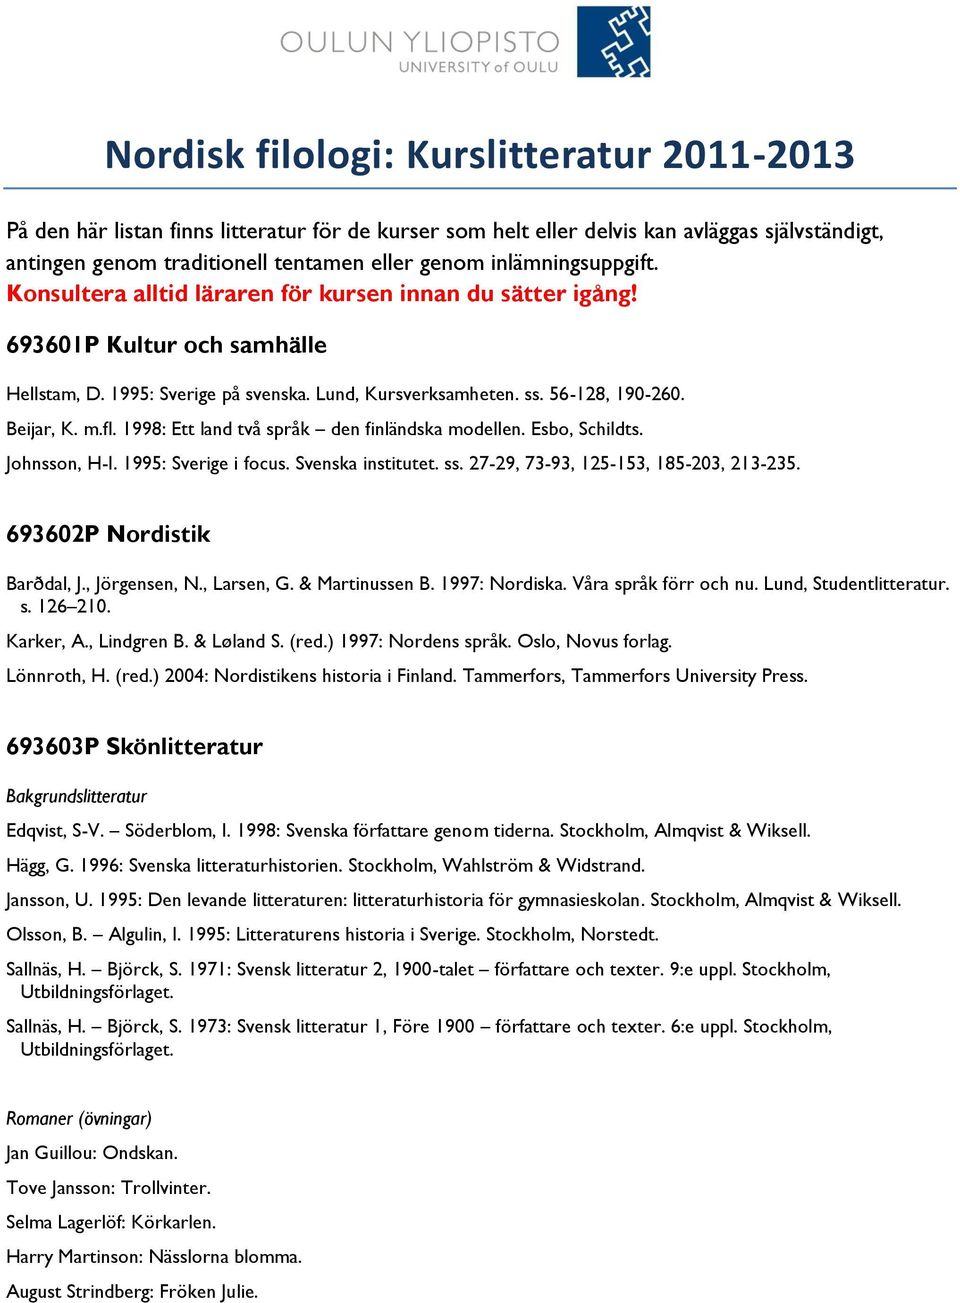 Beijar, K. m.fl. 1998: Ett land två språk den finländska modellen. Esbo, Schildts. Johnsson, H-I. 1995: Sverige i focus. Svenska institutet. ss. 27-29, 73-93, 125-153, 185-203, 213-235.